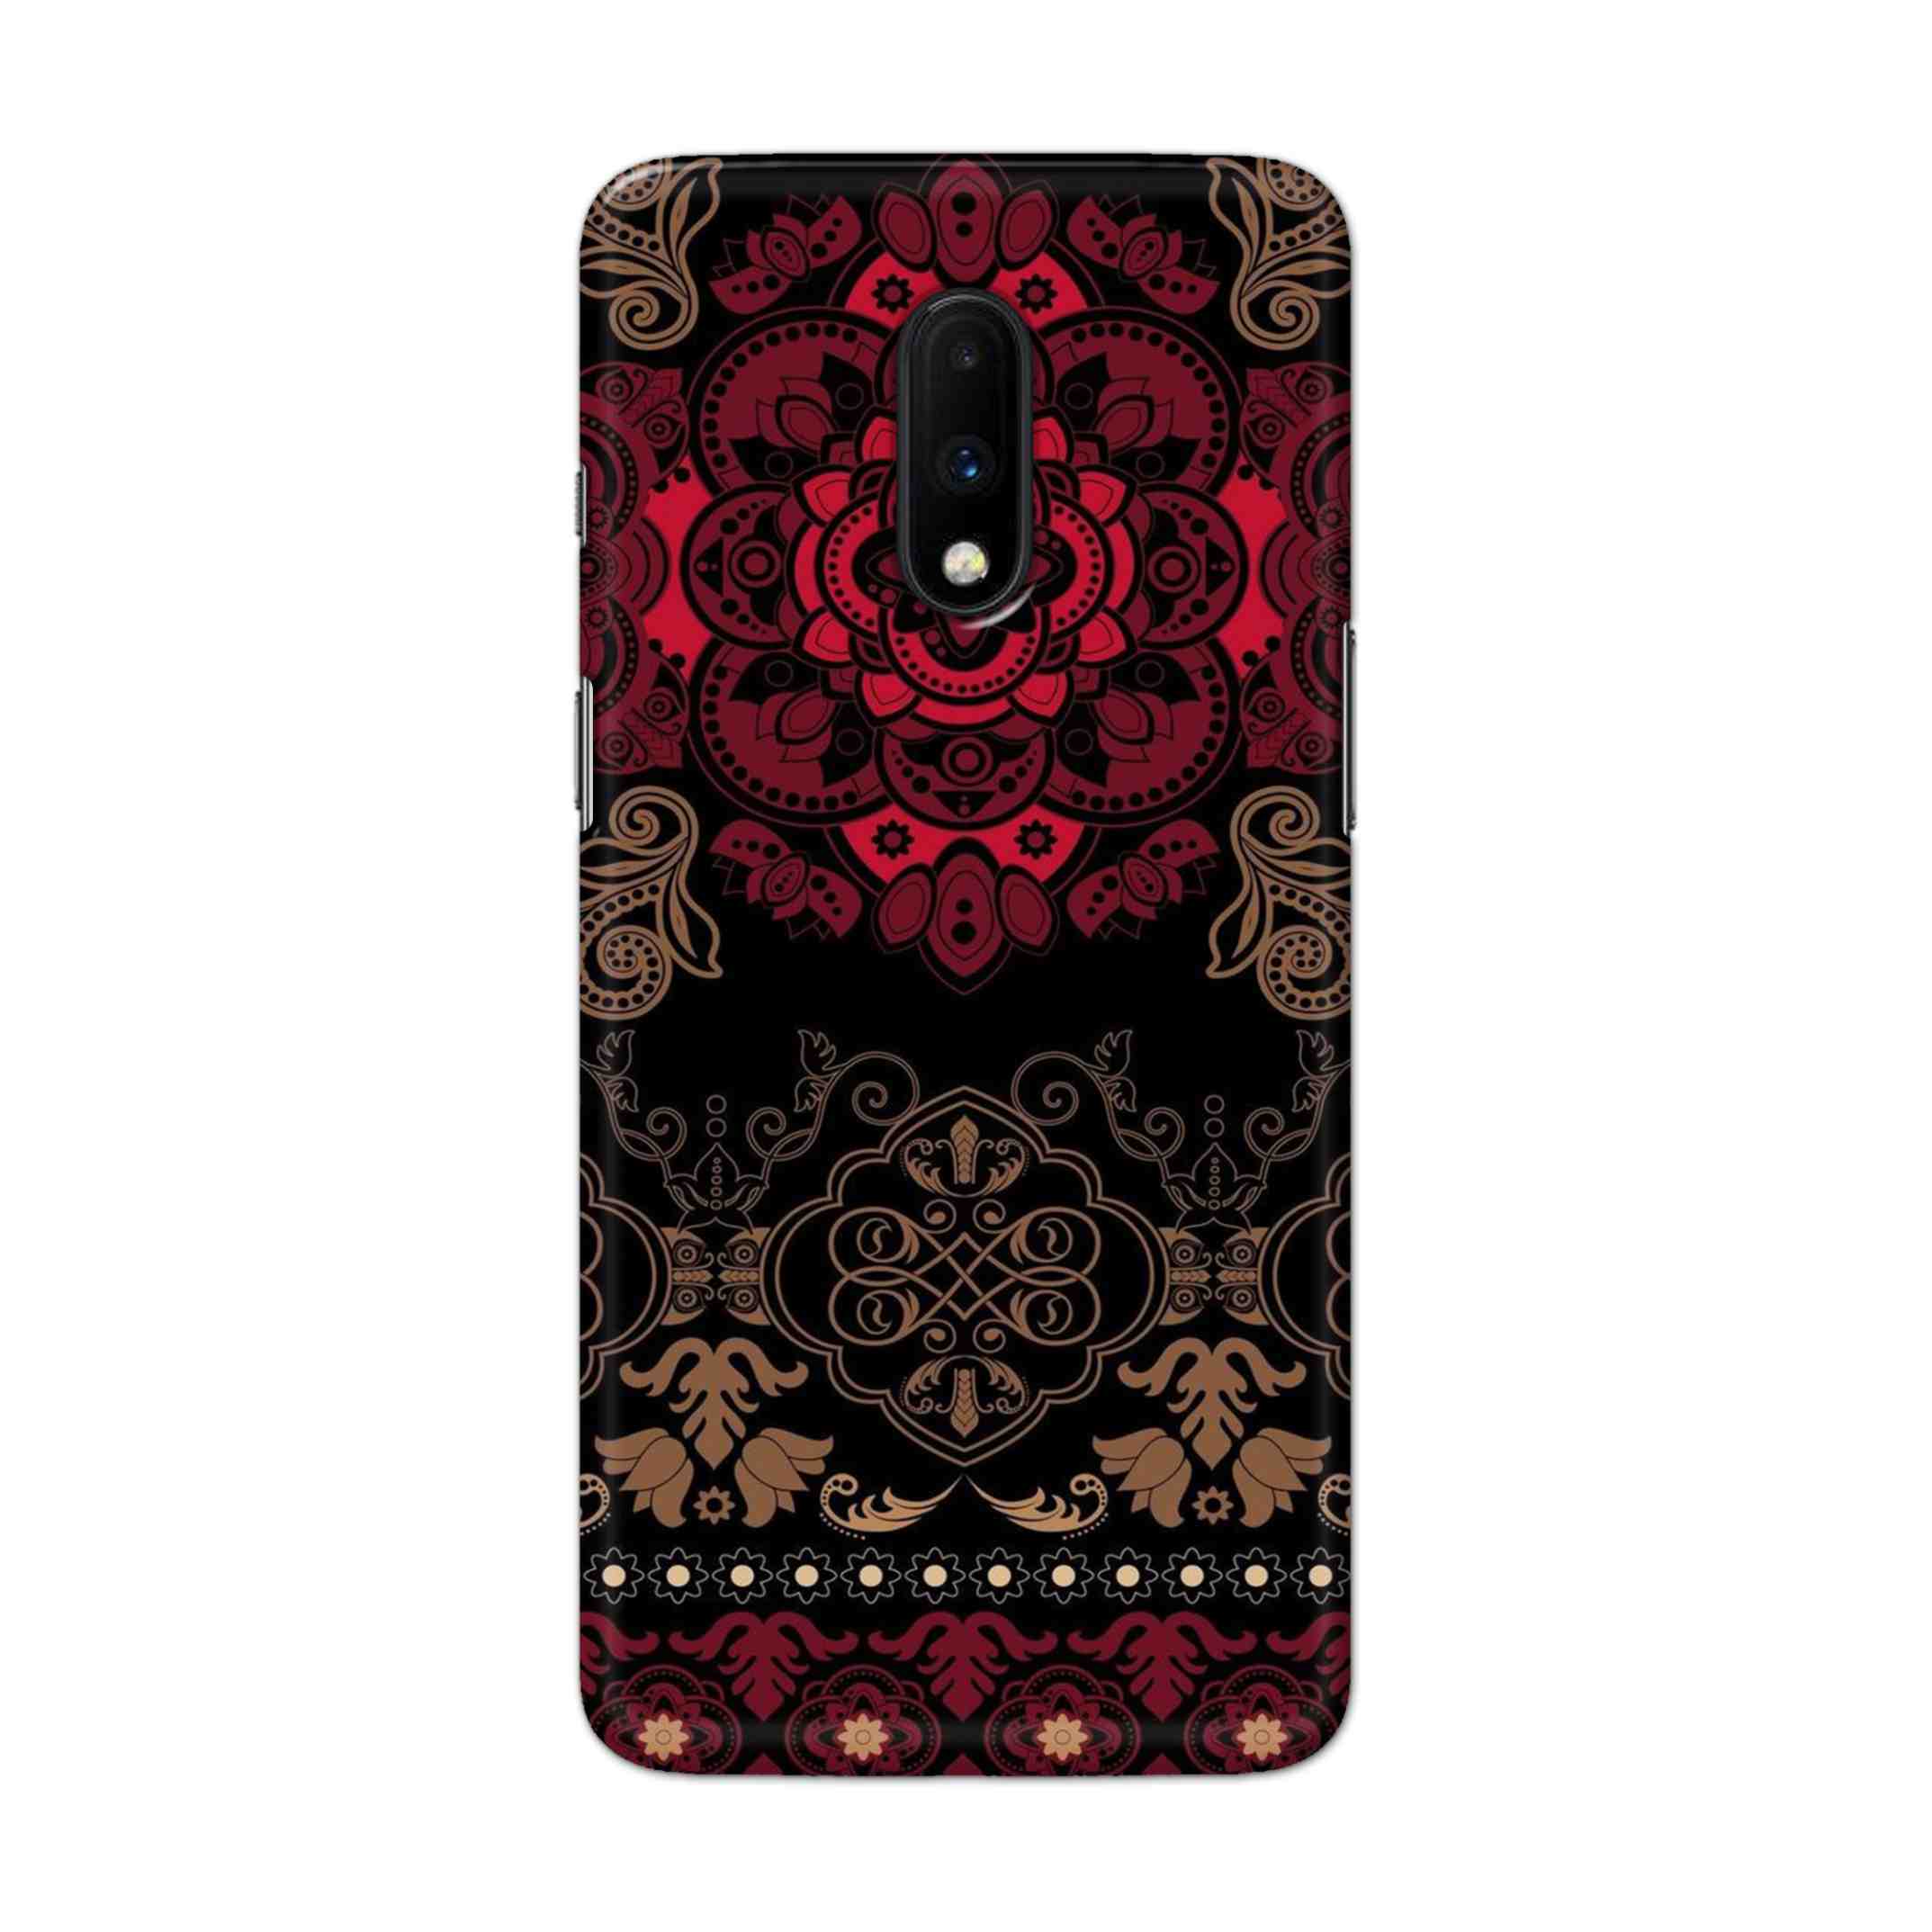 Buy Christian Mandalas Hard Back Mobile Phone Case Cover For OnePlus 7 Online